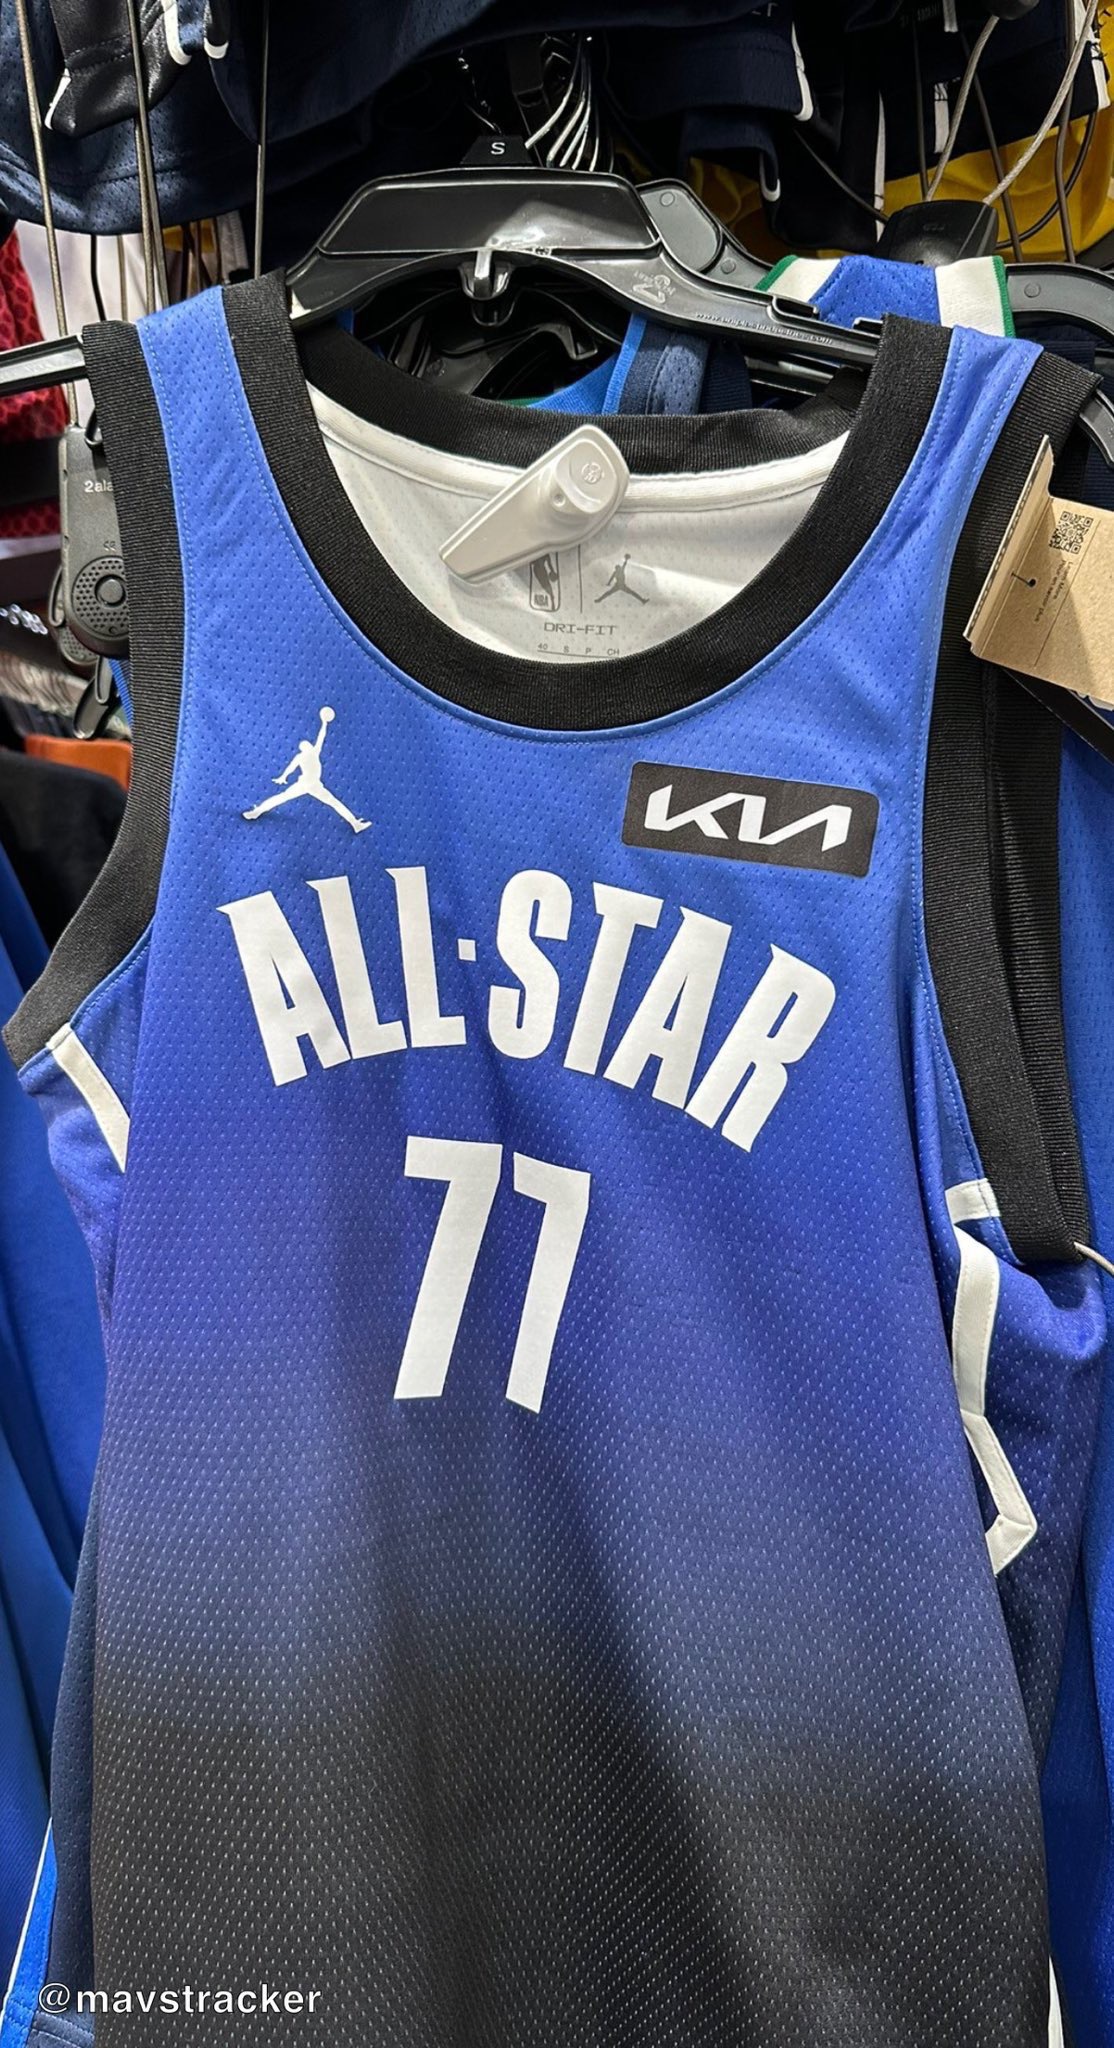 NBA All Star Official 2022 New Design T-Shirt